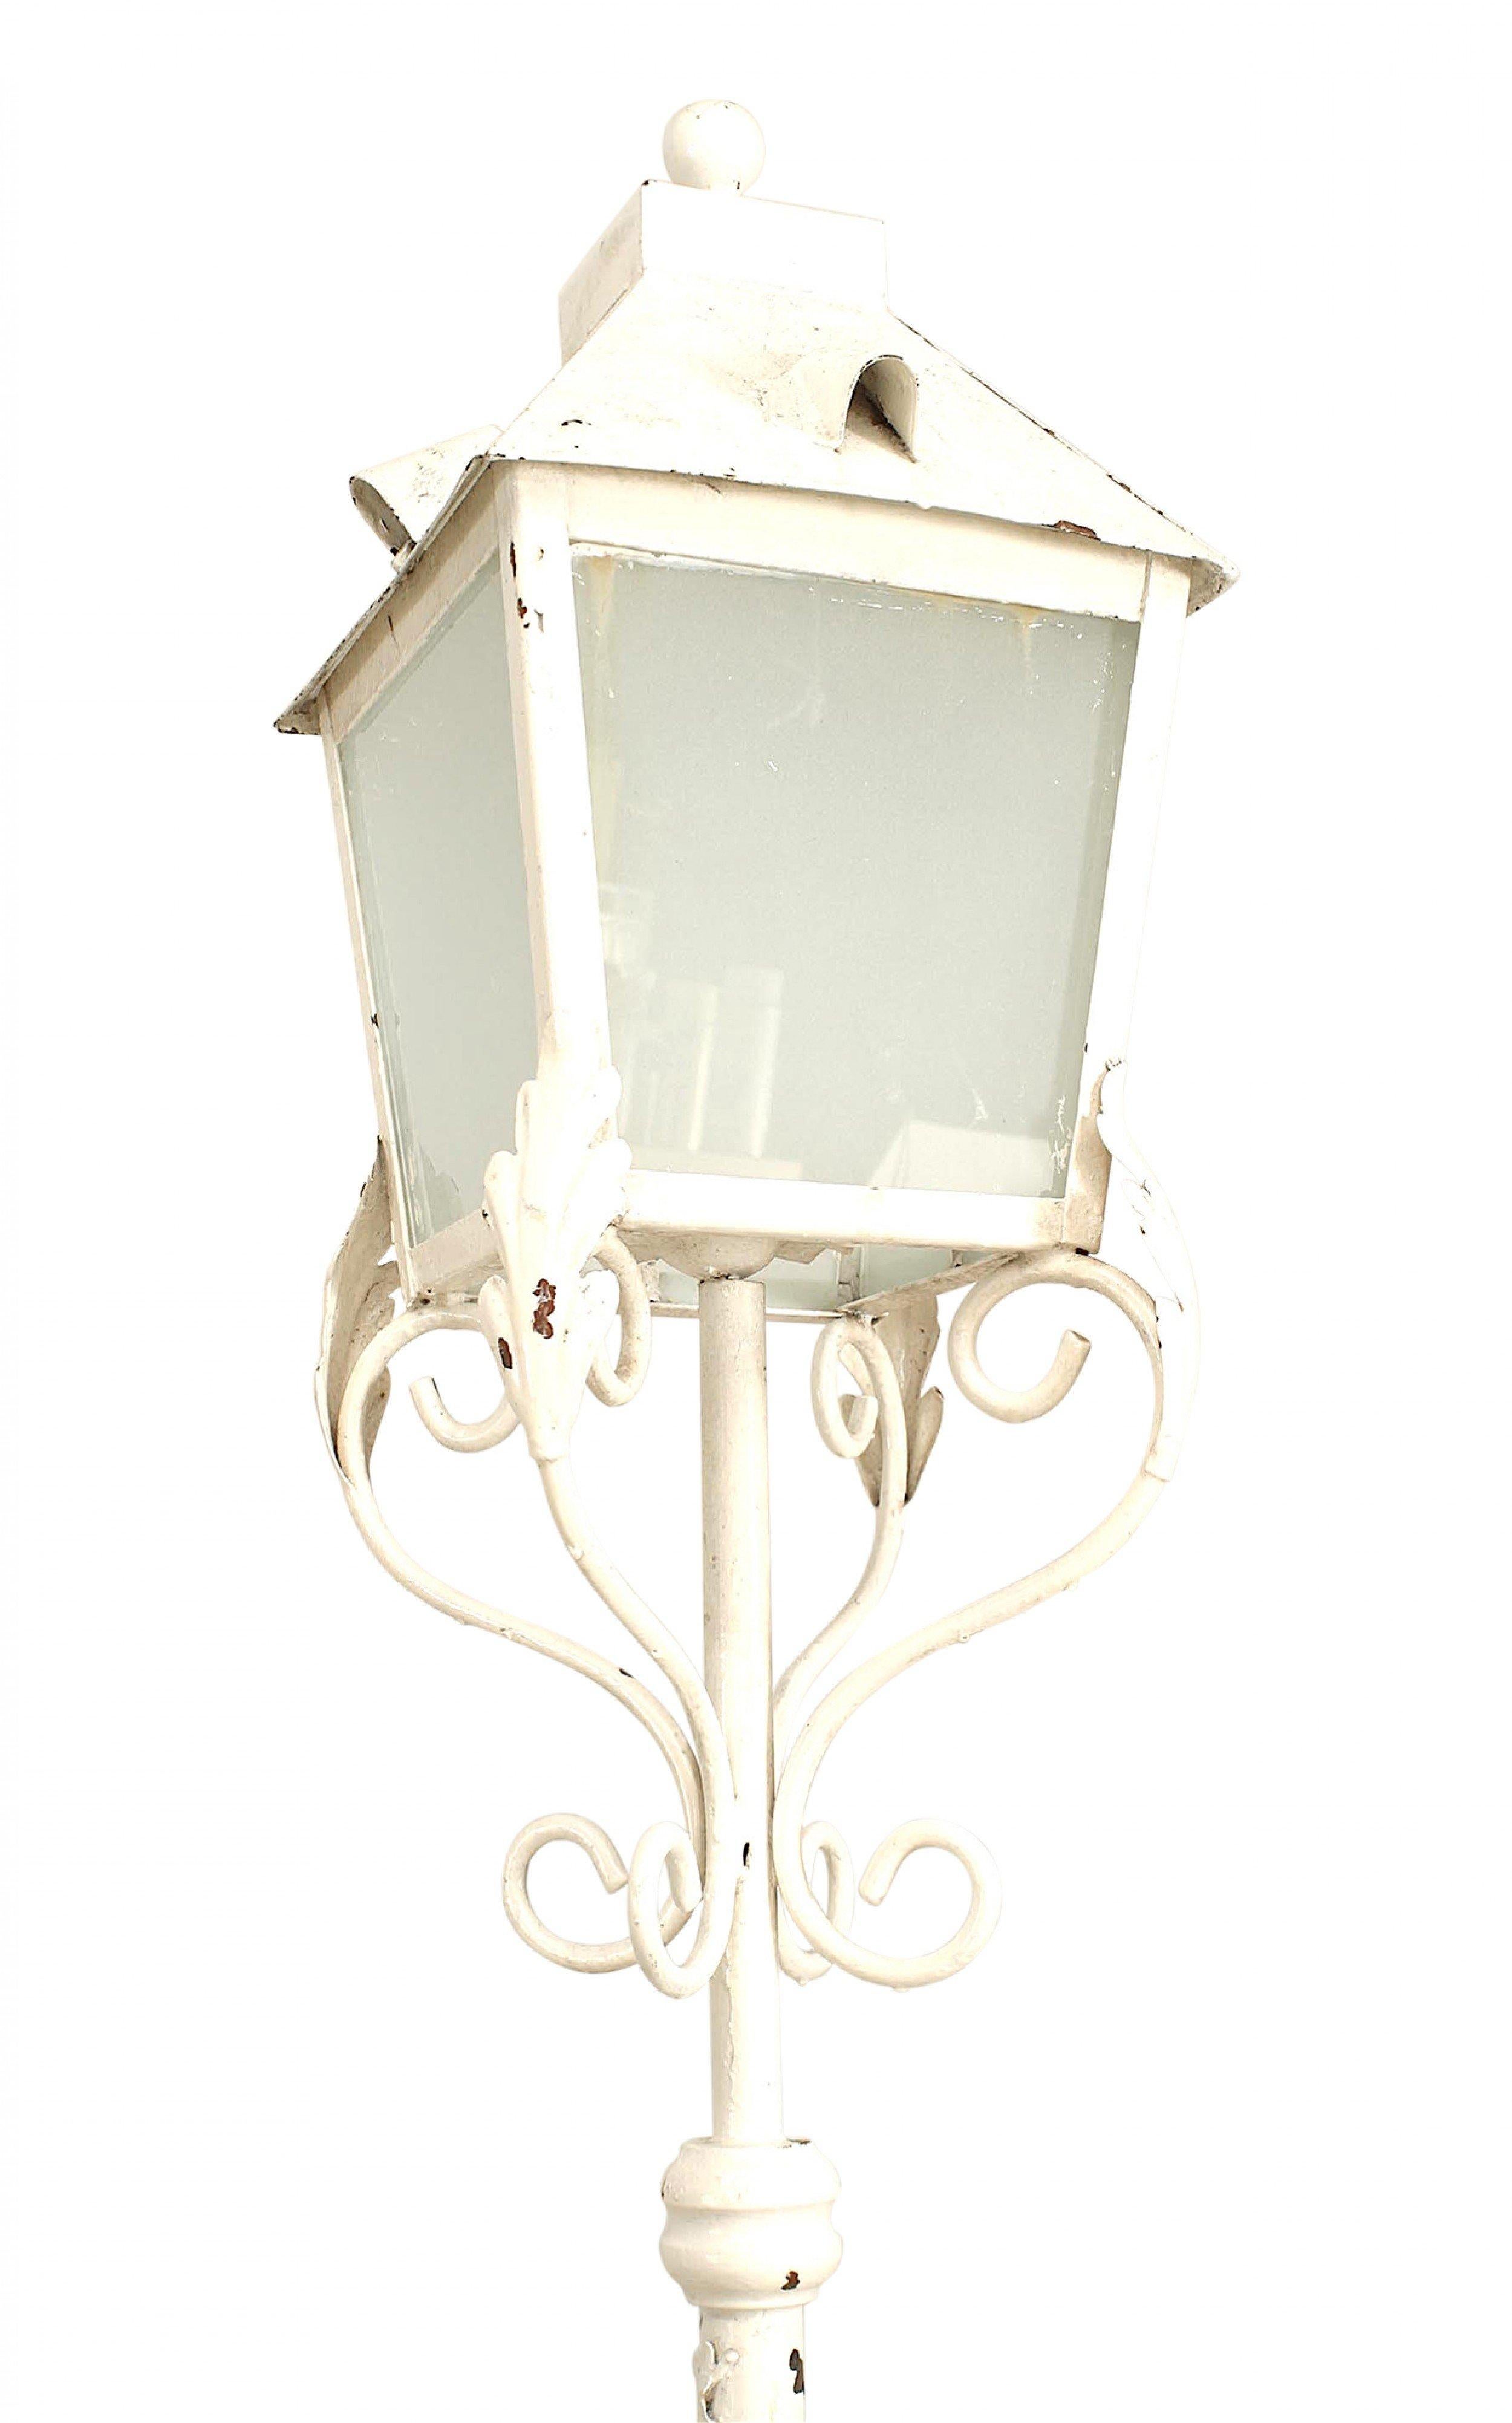 2 lampadaires d'extérieur en fer peint en blanc, reposant sur 4 pieds en forme de volutes, avec une lanterne à 4 panneaux de verre (prix unitaire).
  